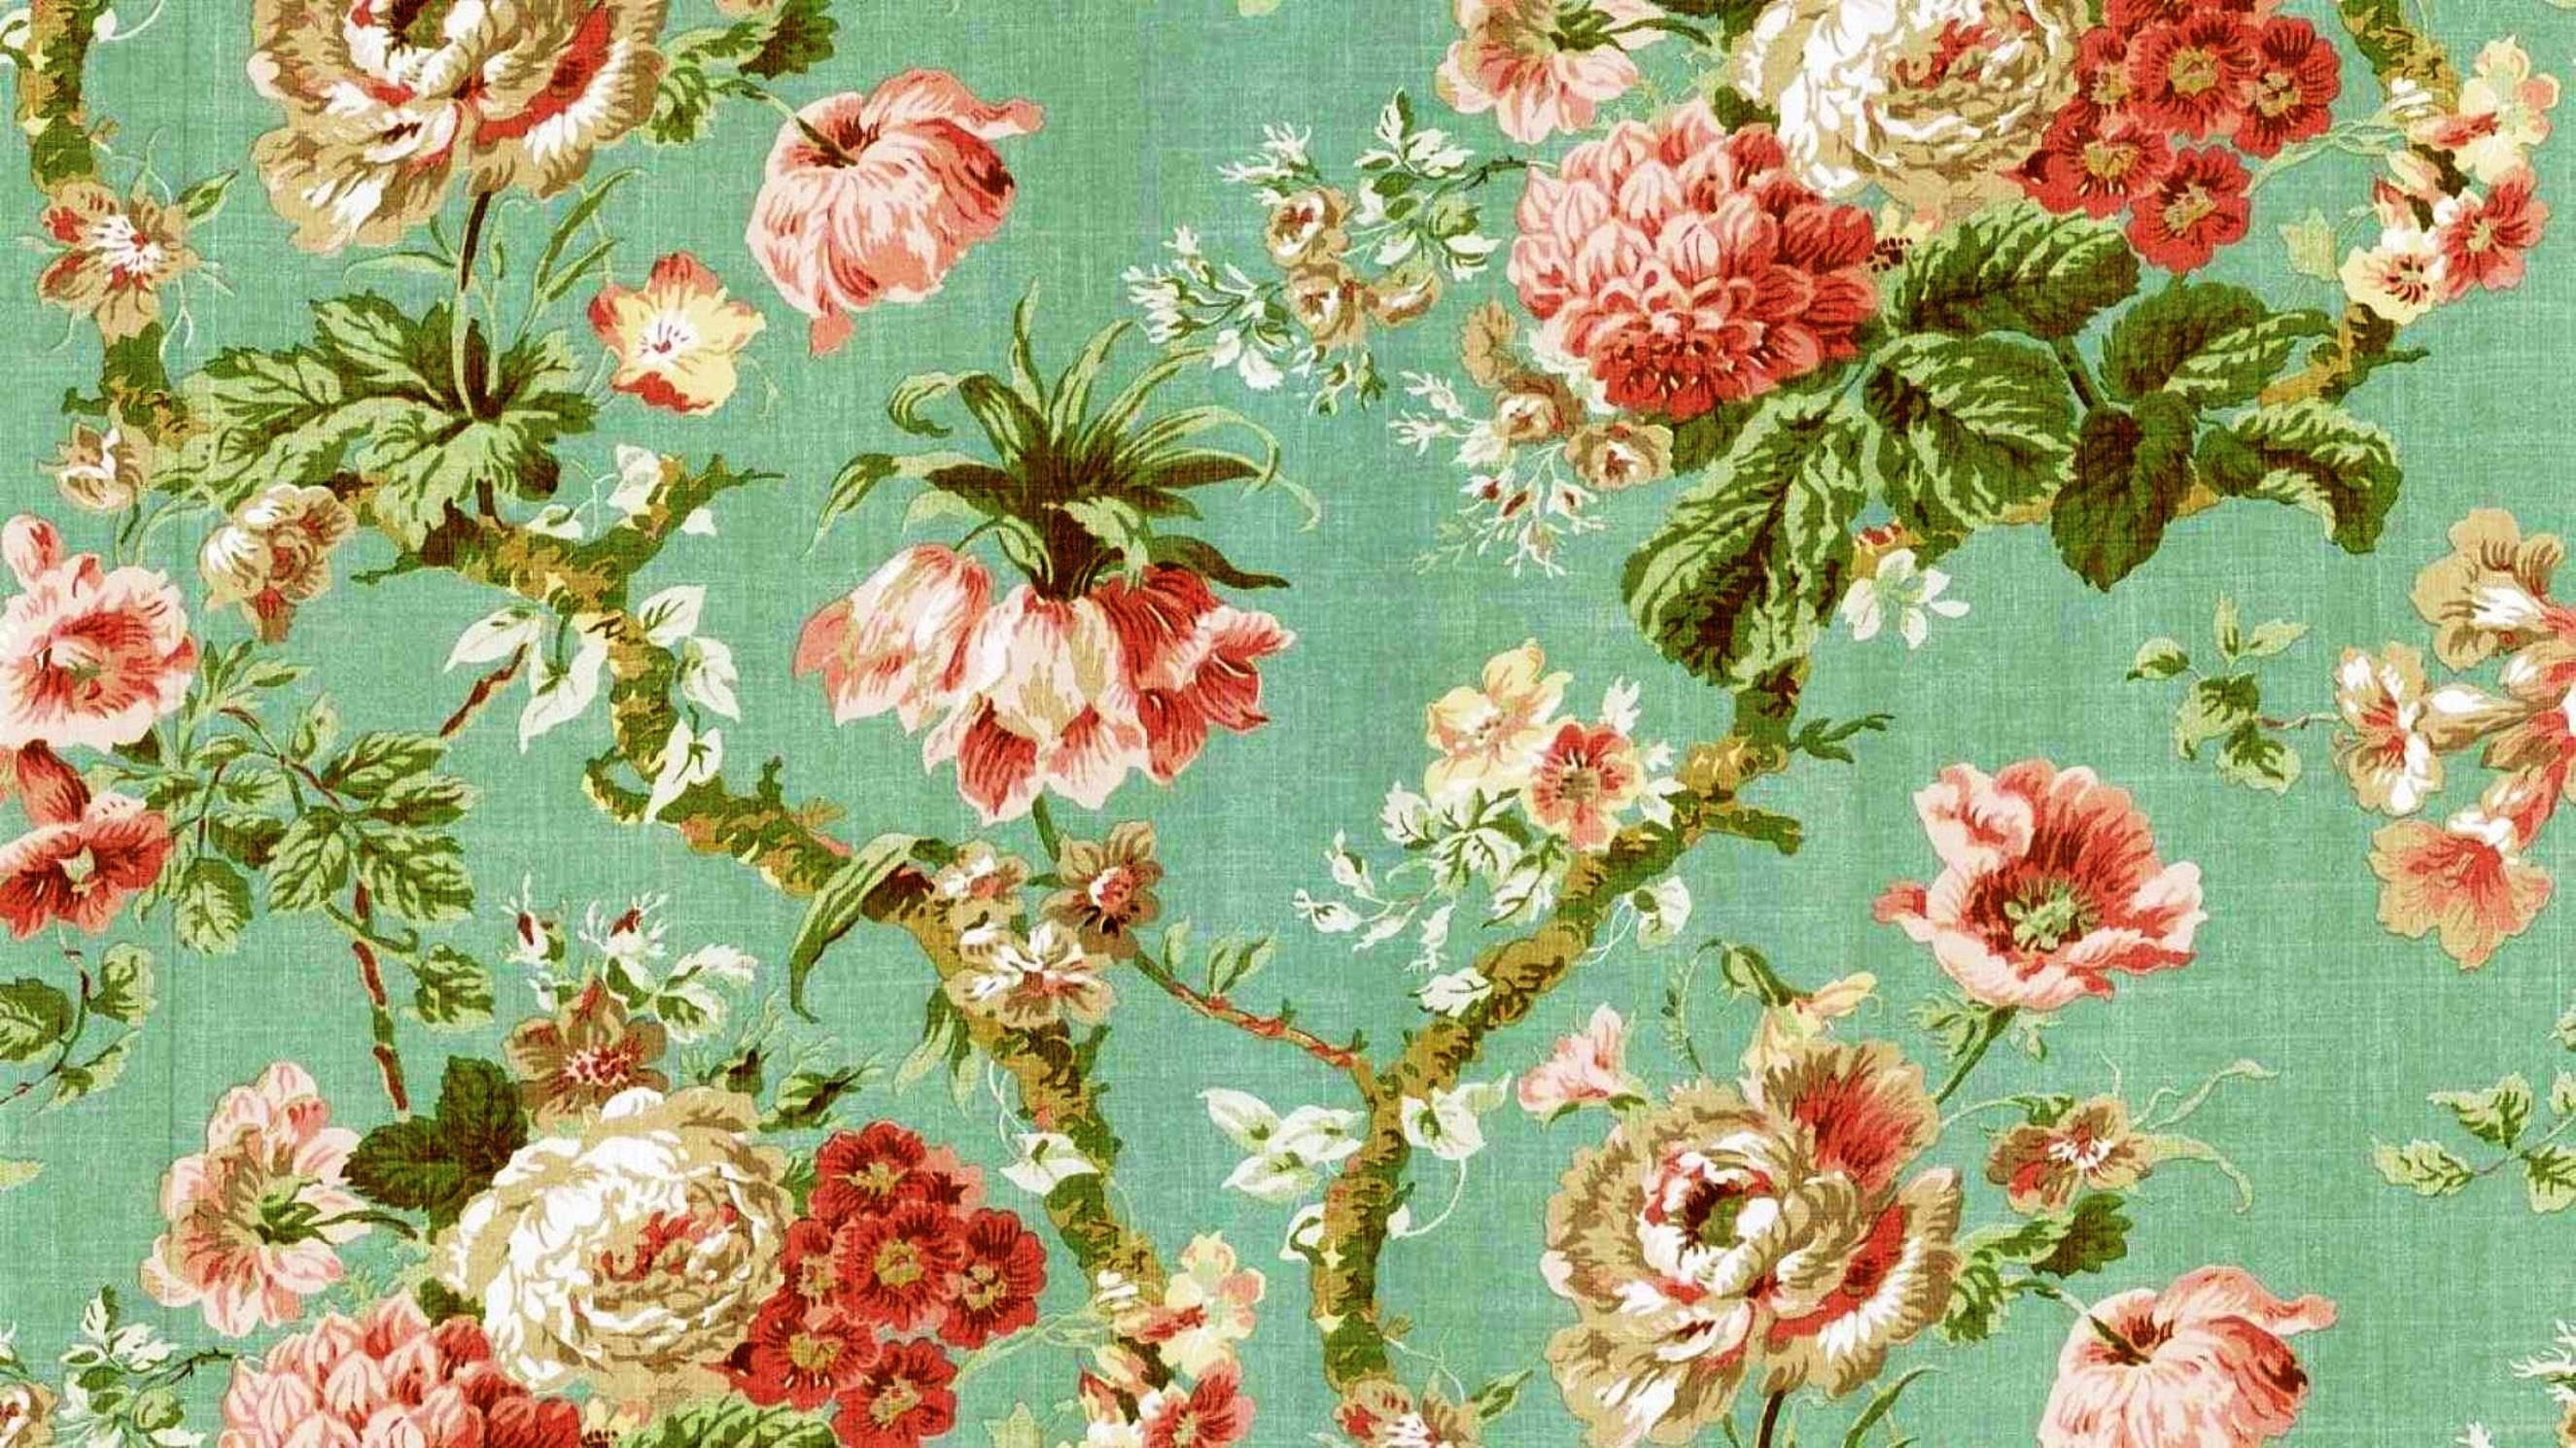 Hình nền Vintage Floral Desktop Wallpaper đem lại cho bạn cảm giác thư thái và gần gũi với thiên nhiên. Hoa và tông màu vintage được phối hợp một cách tinh tế, để lại trong bạn một ấn tượng đẹp và nổi bật. Nếu bạn là người yêu thiên nhiên và phong cách cổ điển, thì đây chắc chắn là một sự lựa chọn tuyệt vời.